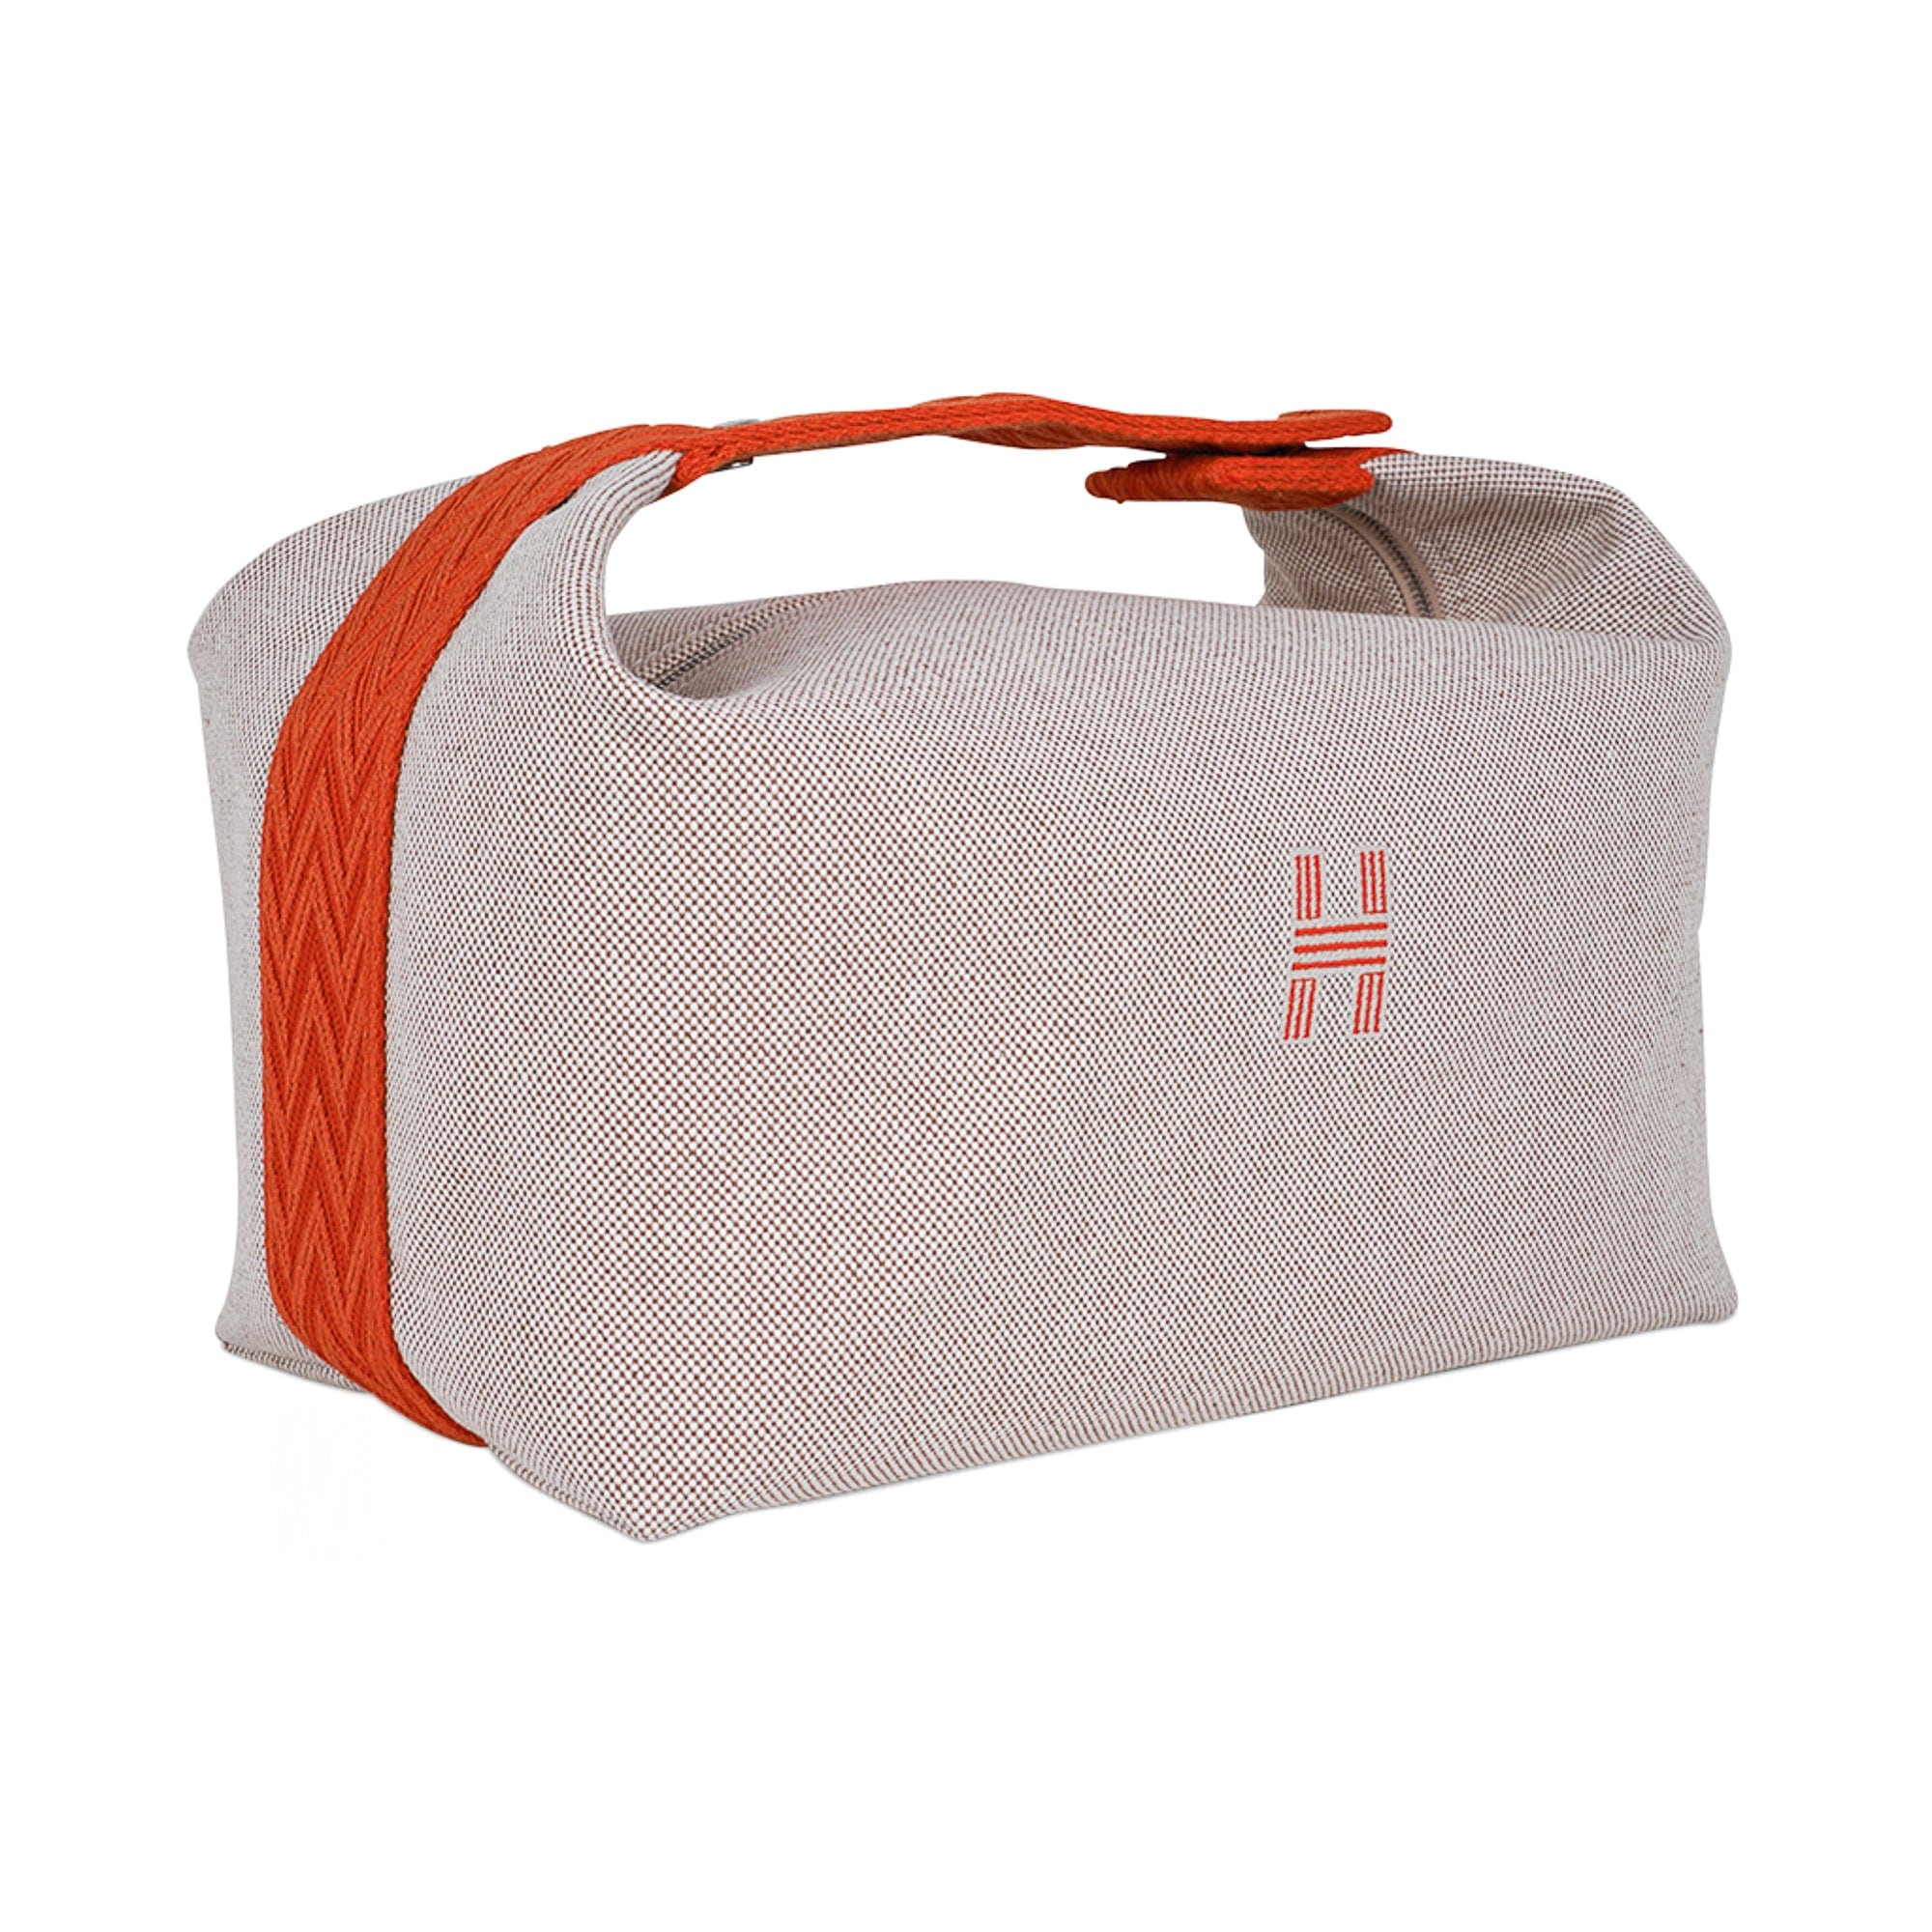 Hermes Beige Orange Bride a Brac Vanity Cosmetic Bag Case Brand